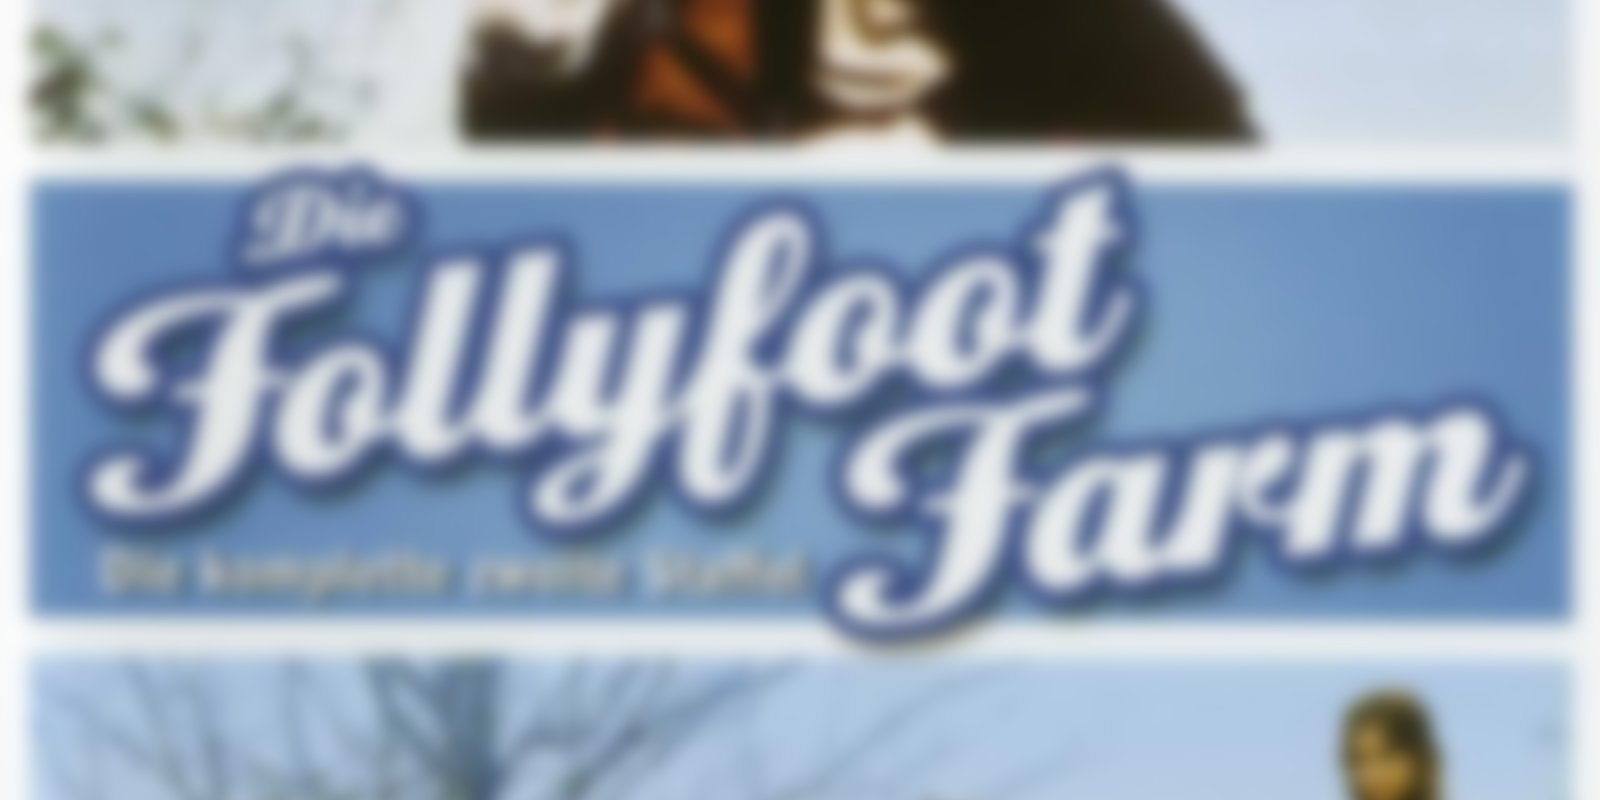 Die Follyfoot Farm - Staffel 2